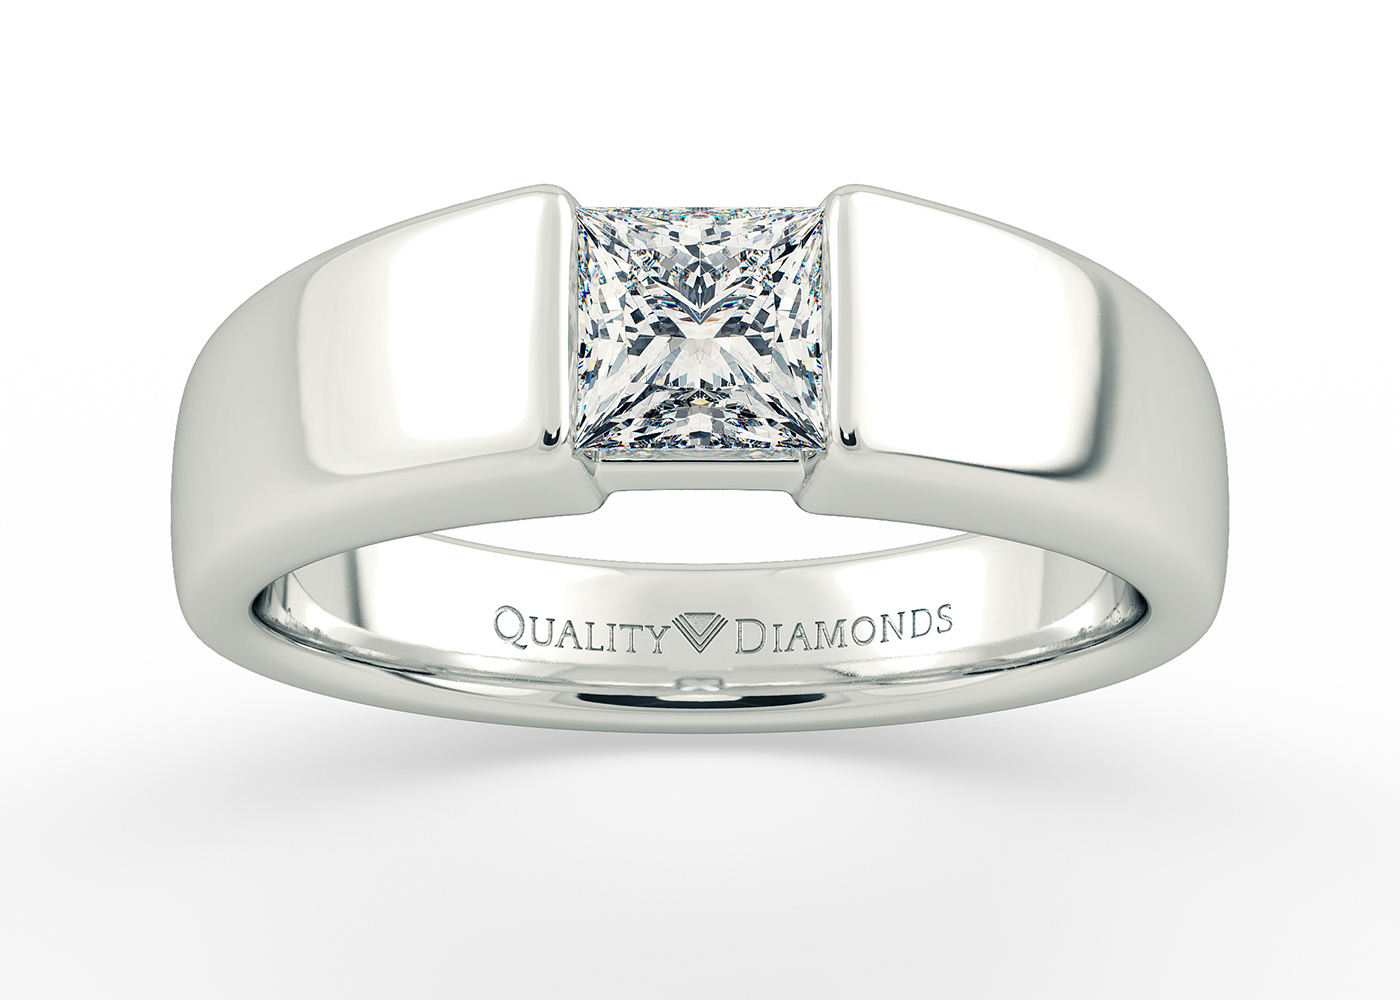 Princess Vesta Diamond Ring in 18K White Gold